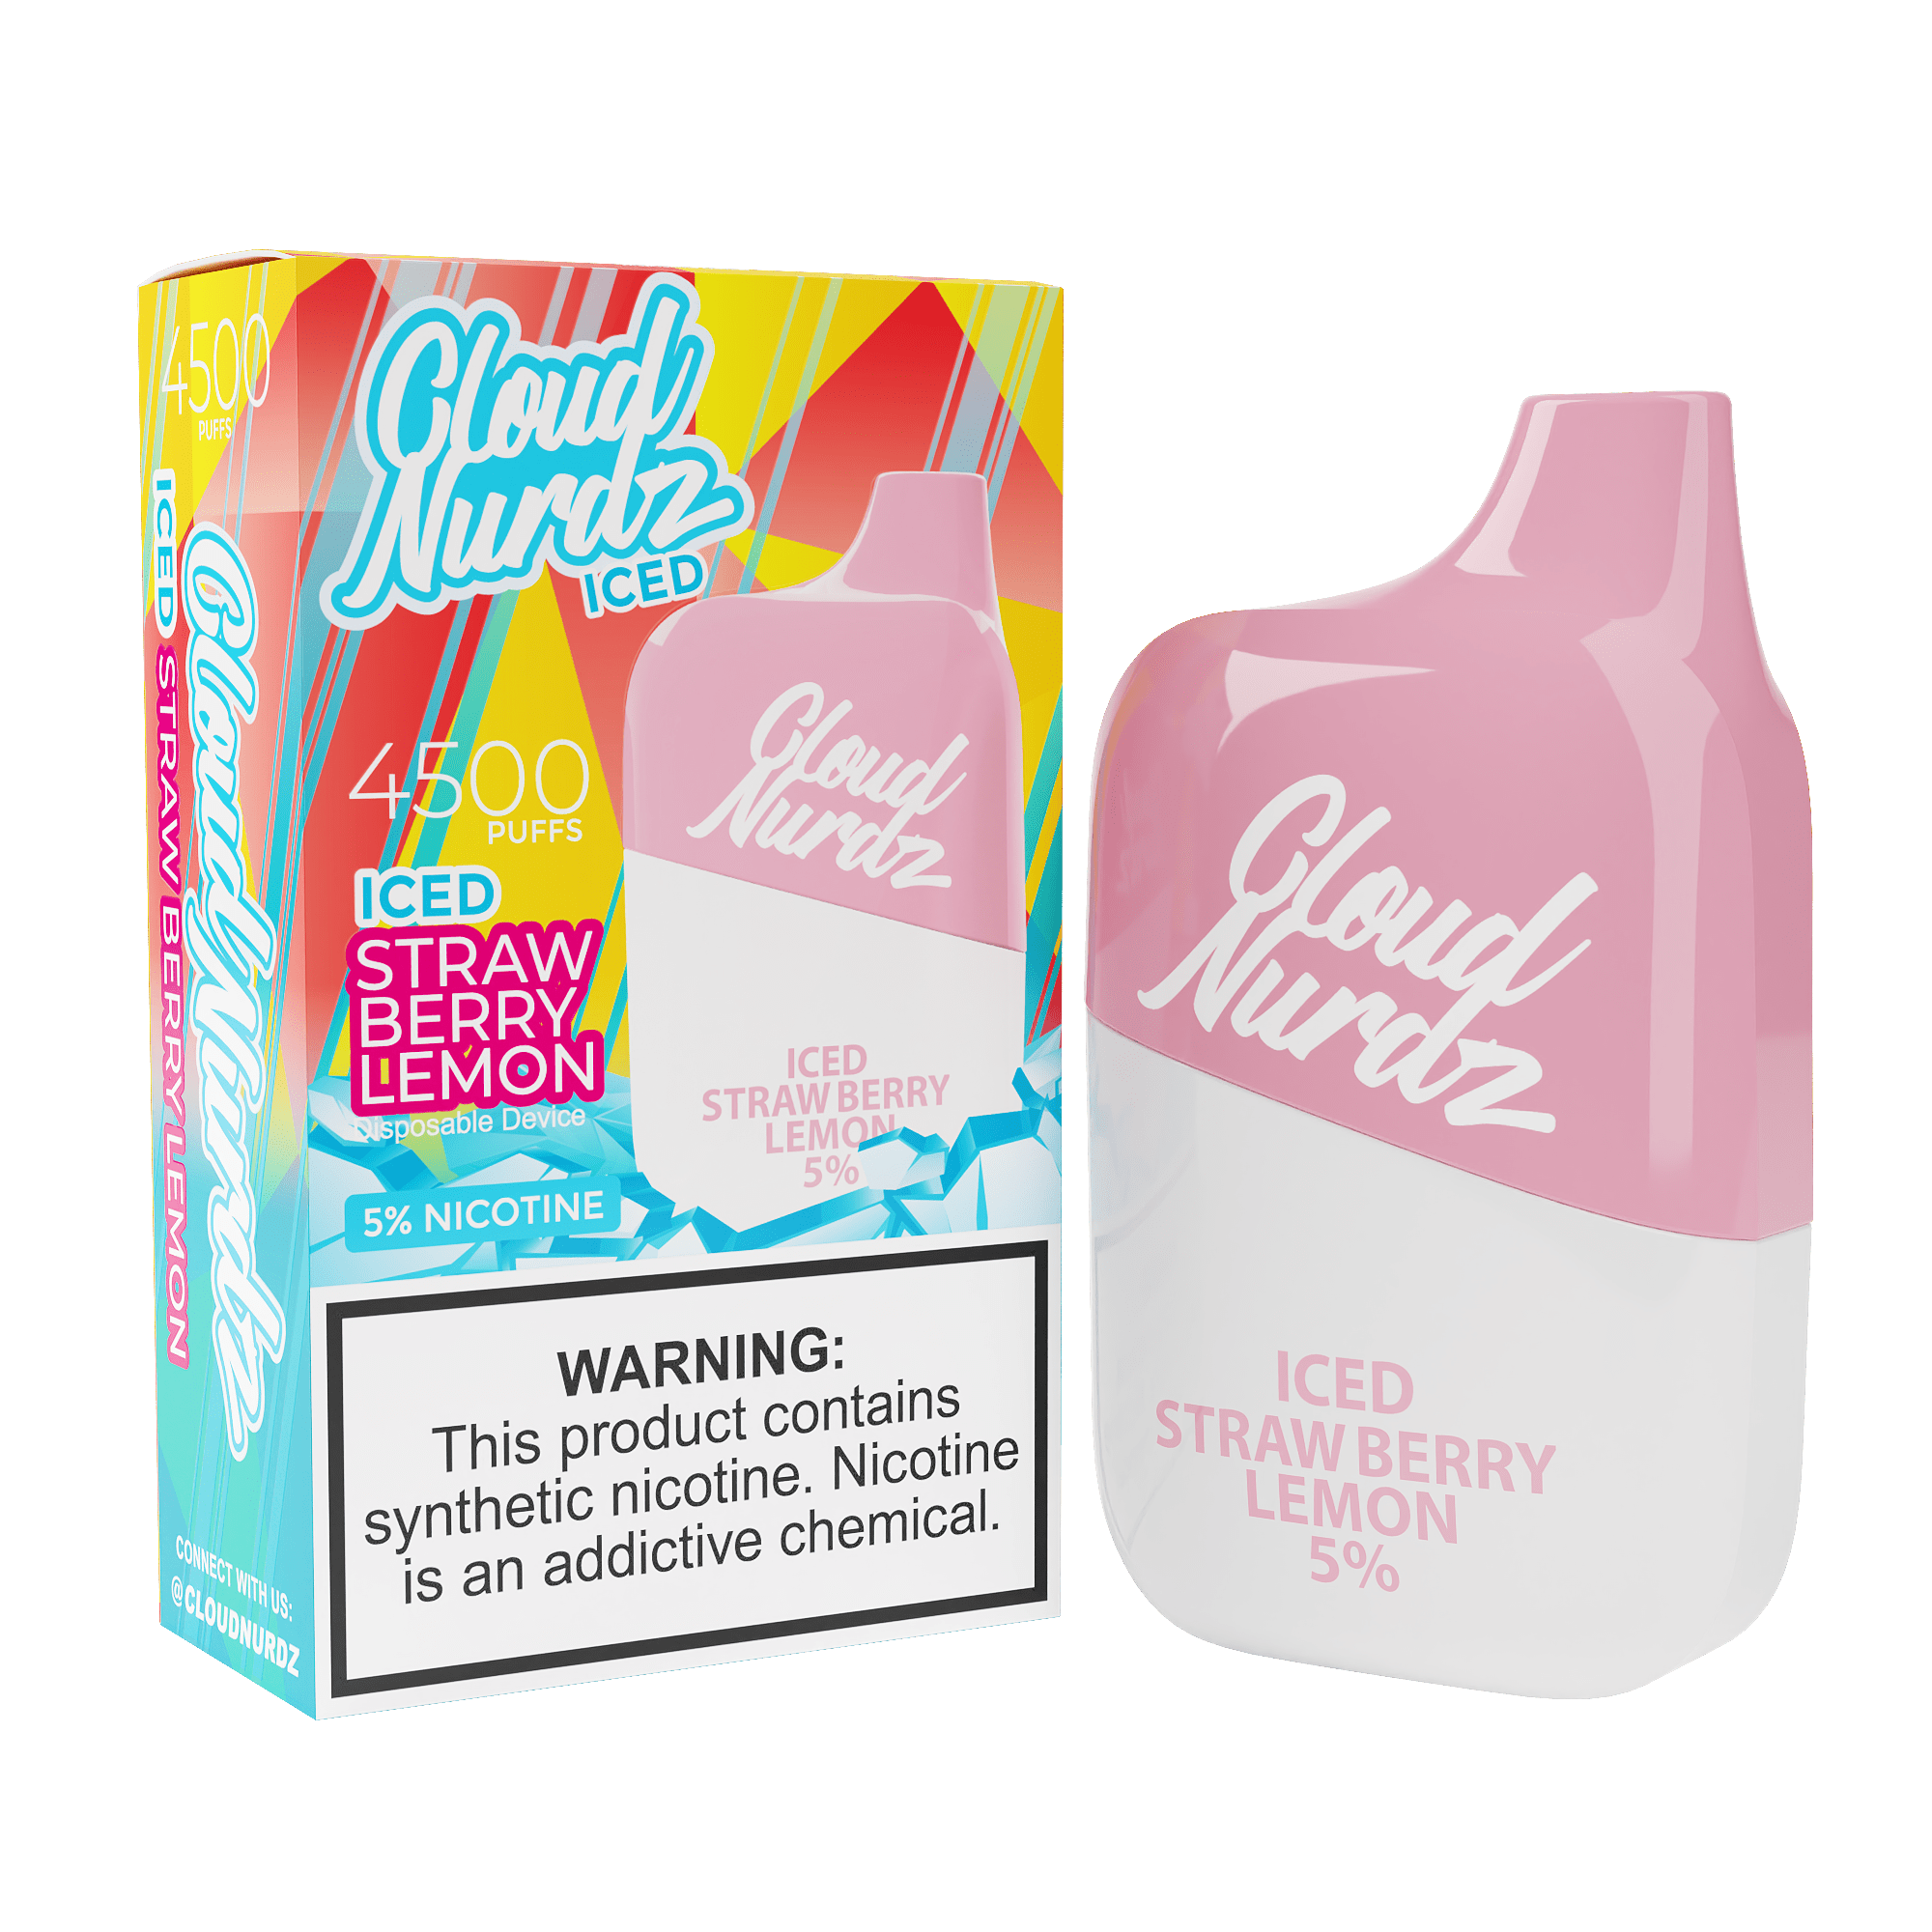 Cloud Nurdz Disposable Vape Strawberry Lemon Iced Cloud Nurdz 4500 Disposable Vape (5%, 4500 Puffs)